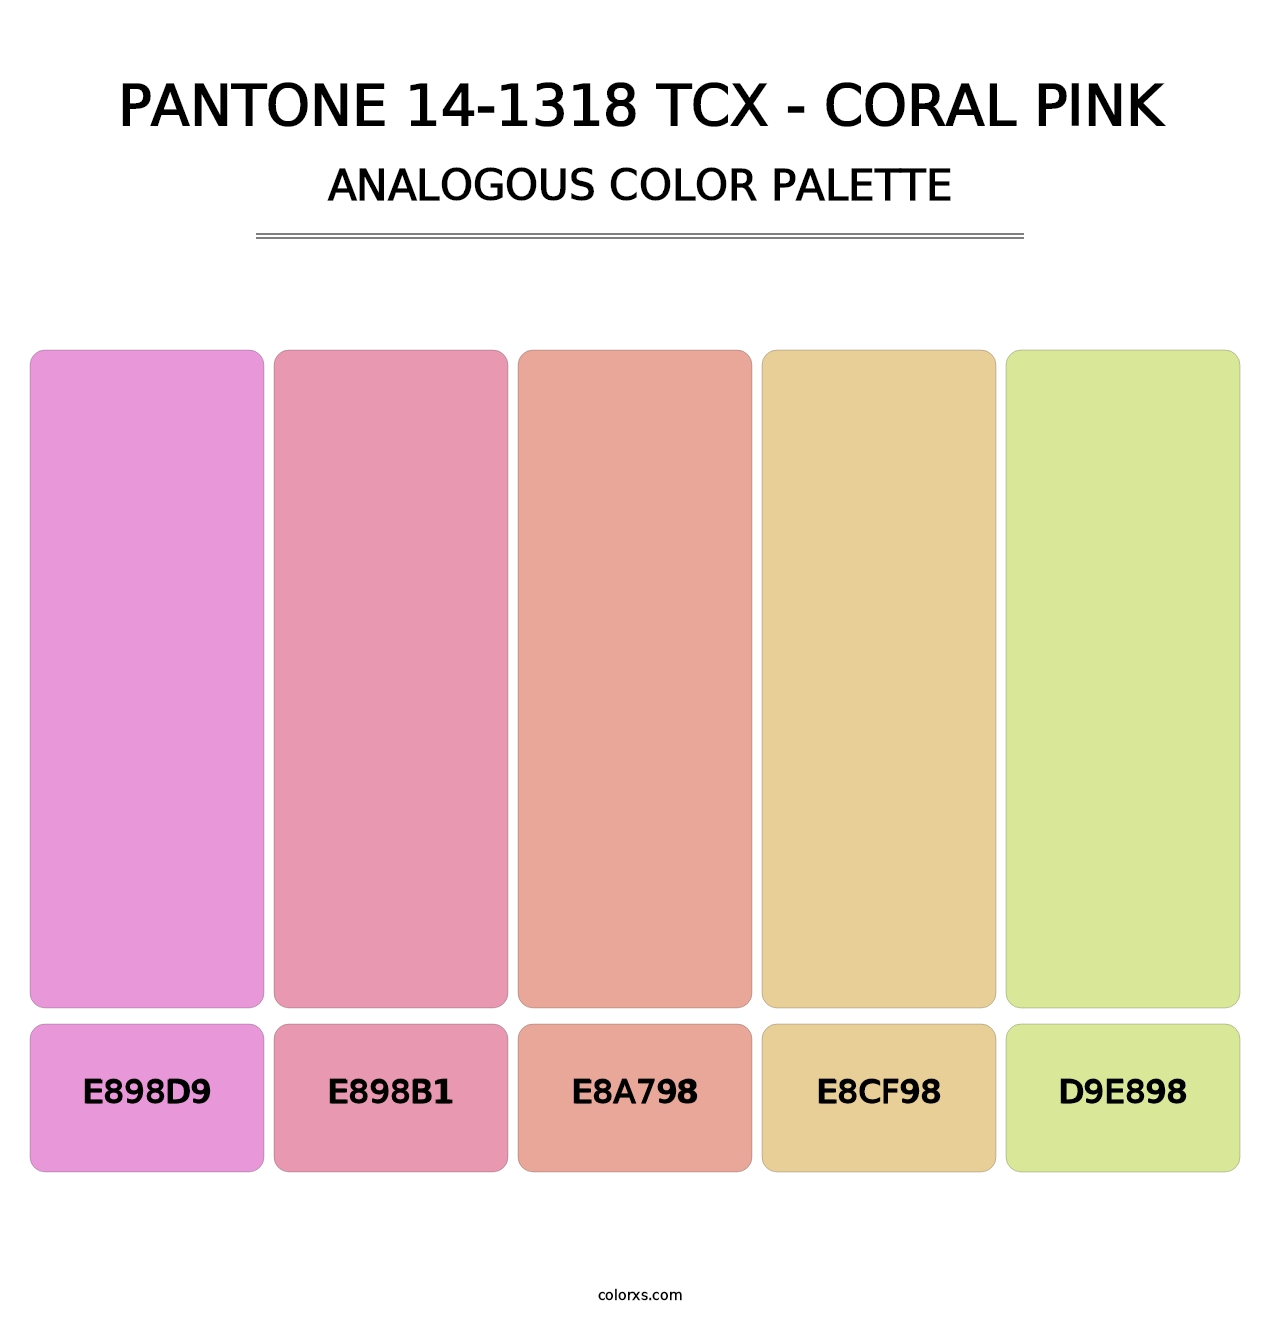 PANTONE 14-1318 TCX - Coral Pink - Analogous Color Palette